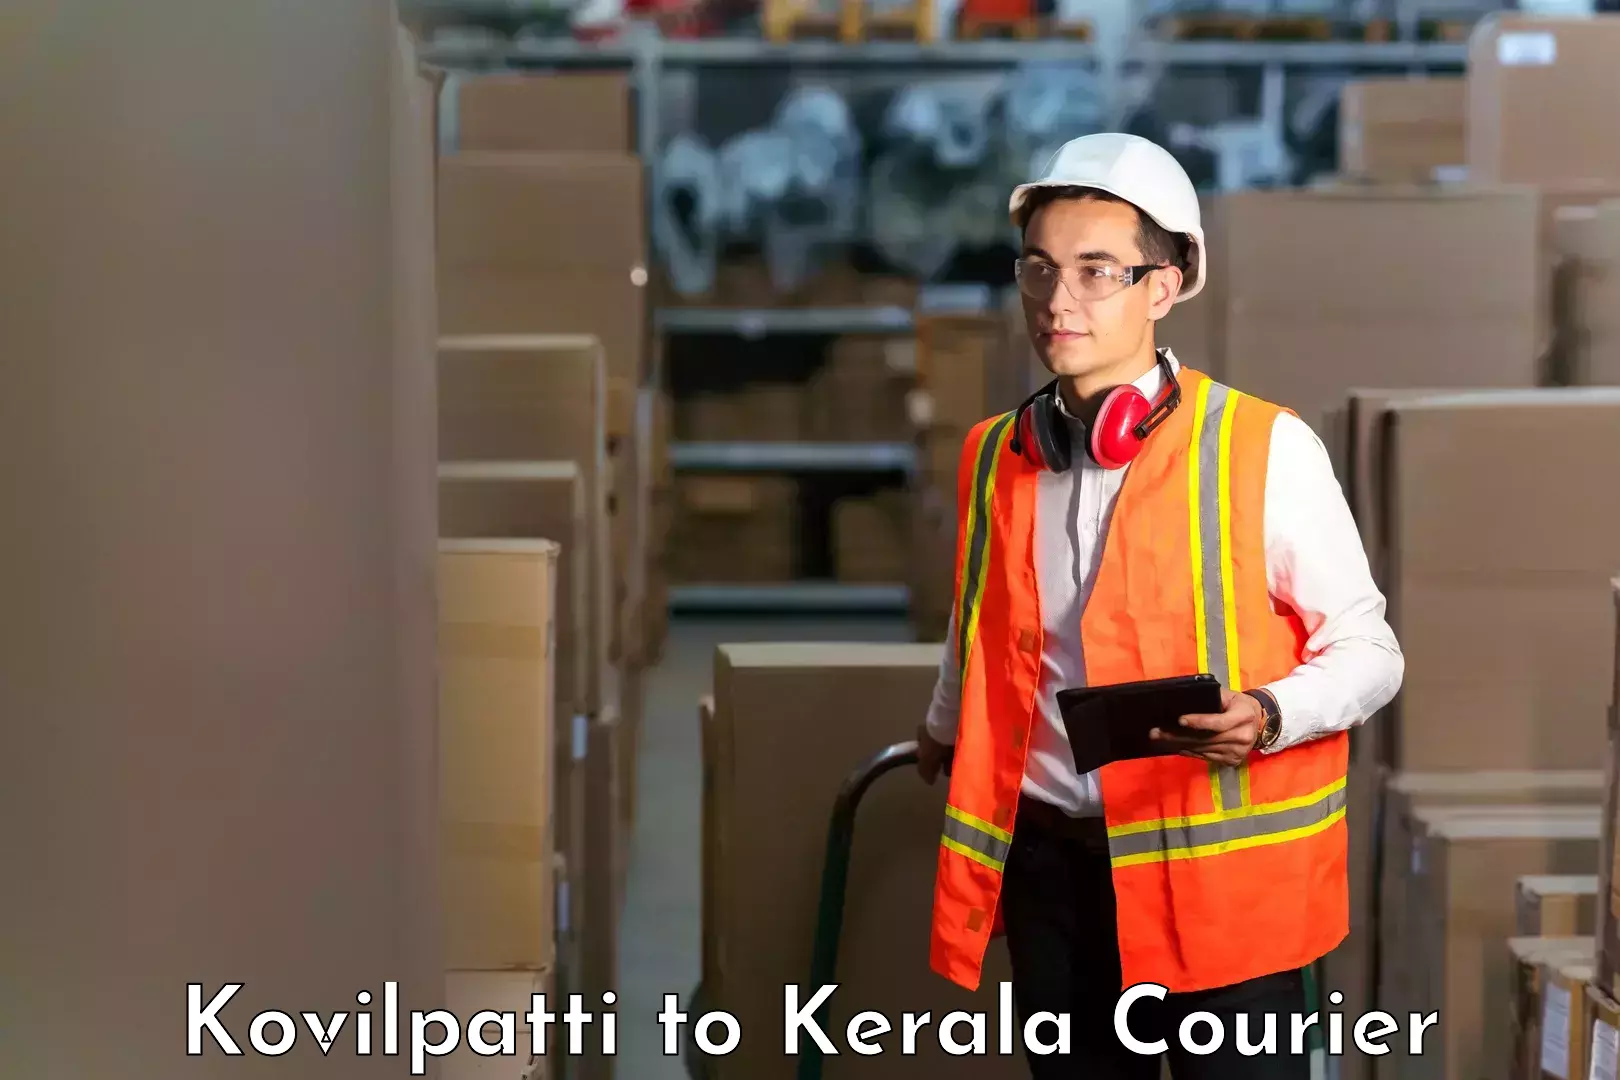 Speedy delivery service Kovilpatti to Chervathur